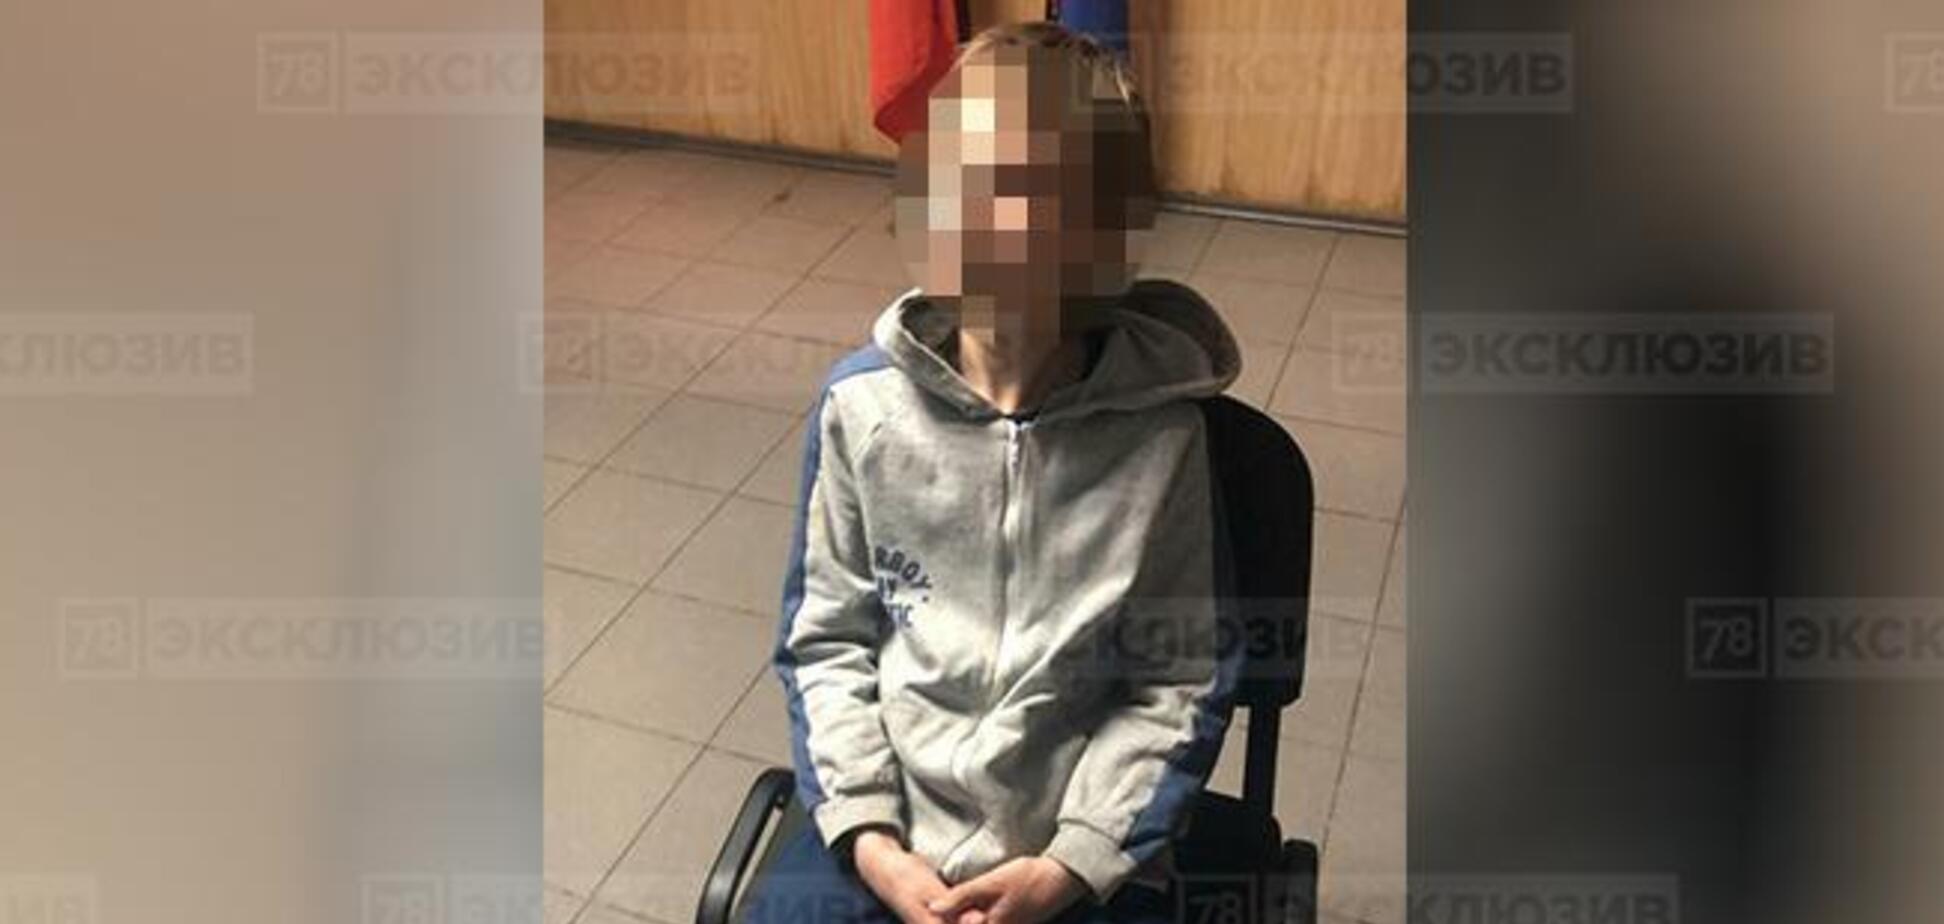 Убил на кухне: в России 12-летний расправился с собственной матерью. Фото и видео